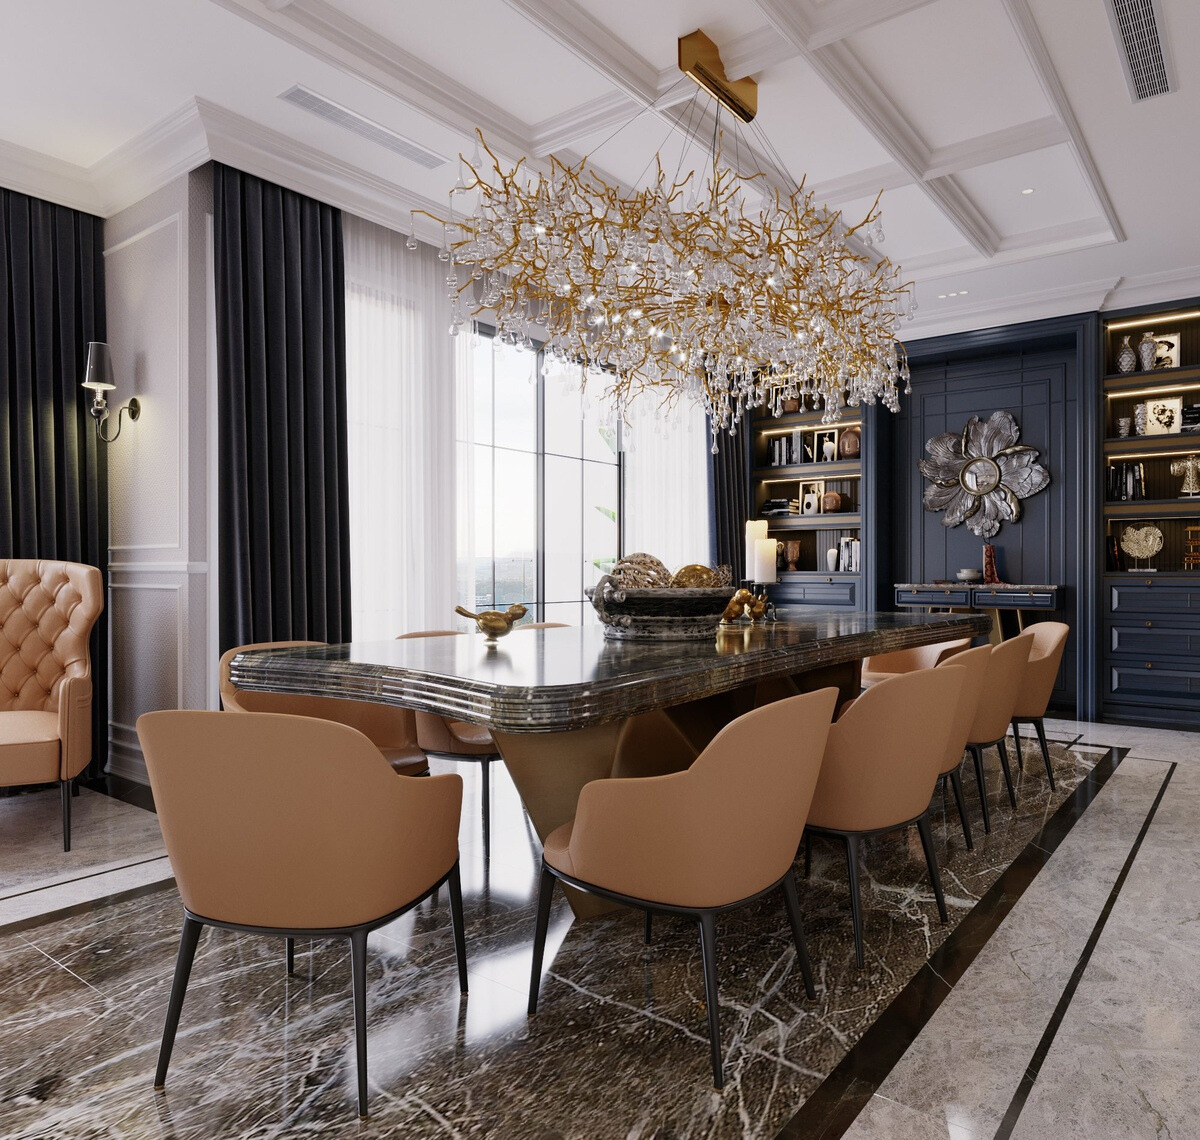 thiết kế nội thất biệt thự Luxury chú trọng đến tính tinh xảo